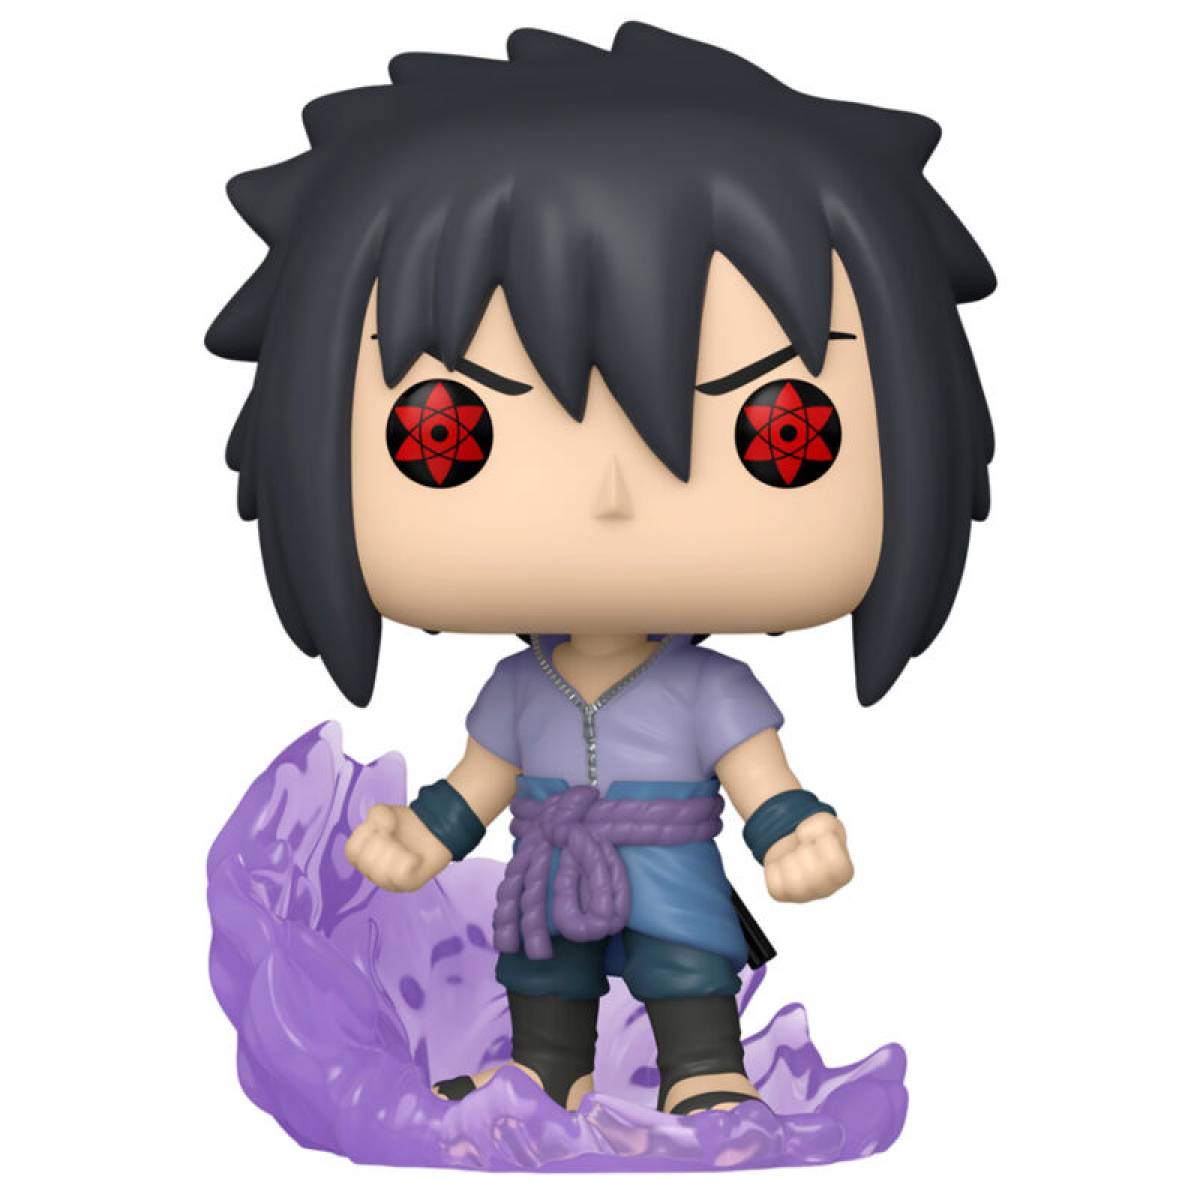 POP figurina Naruto Shippuden Sasuke Uchiha